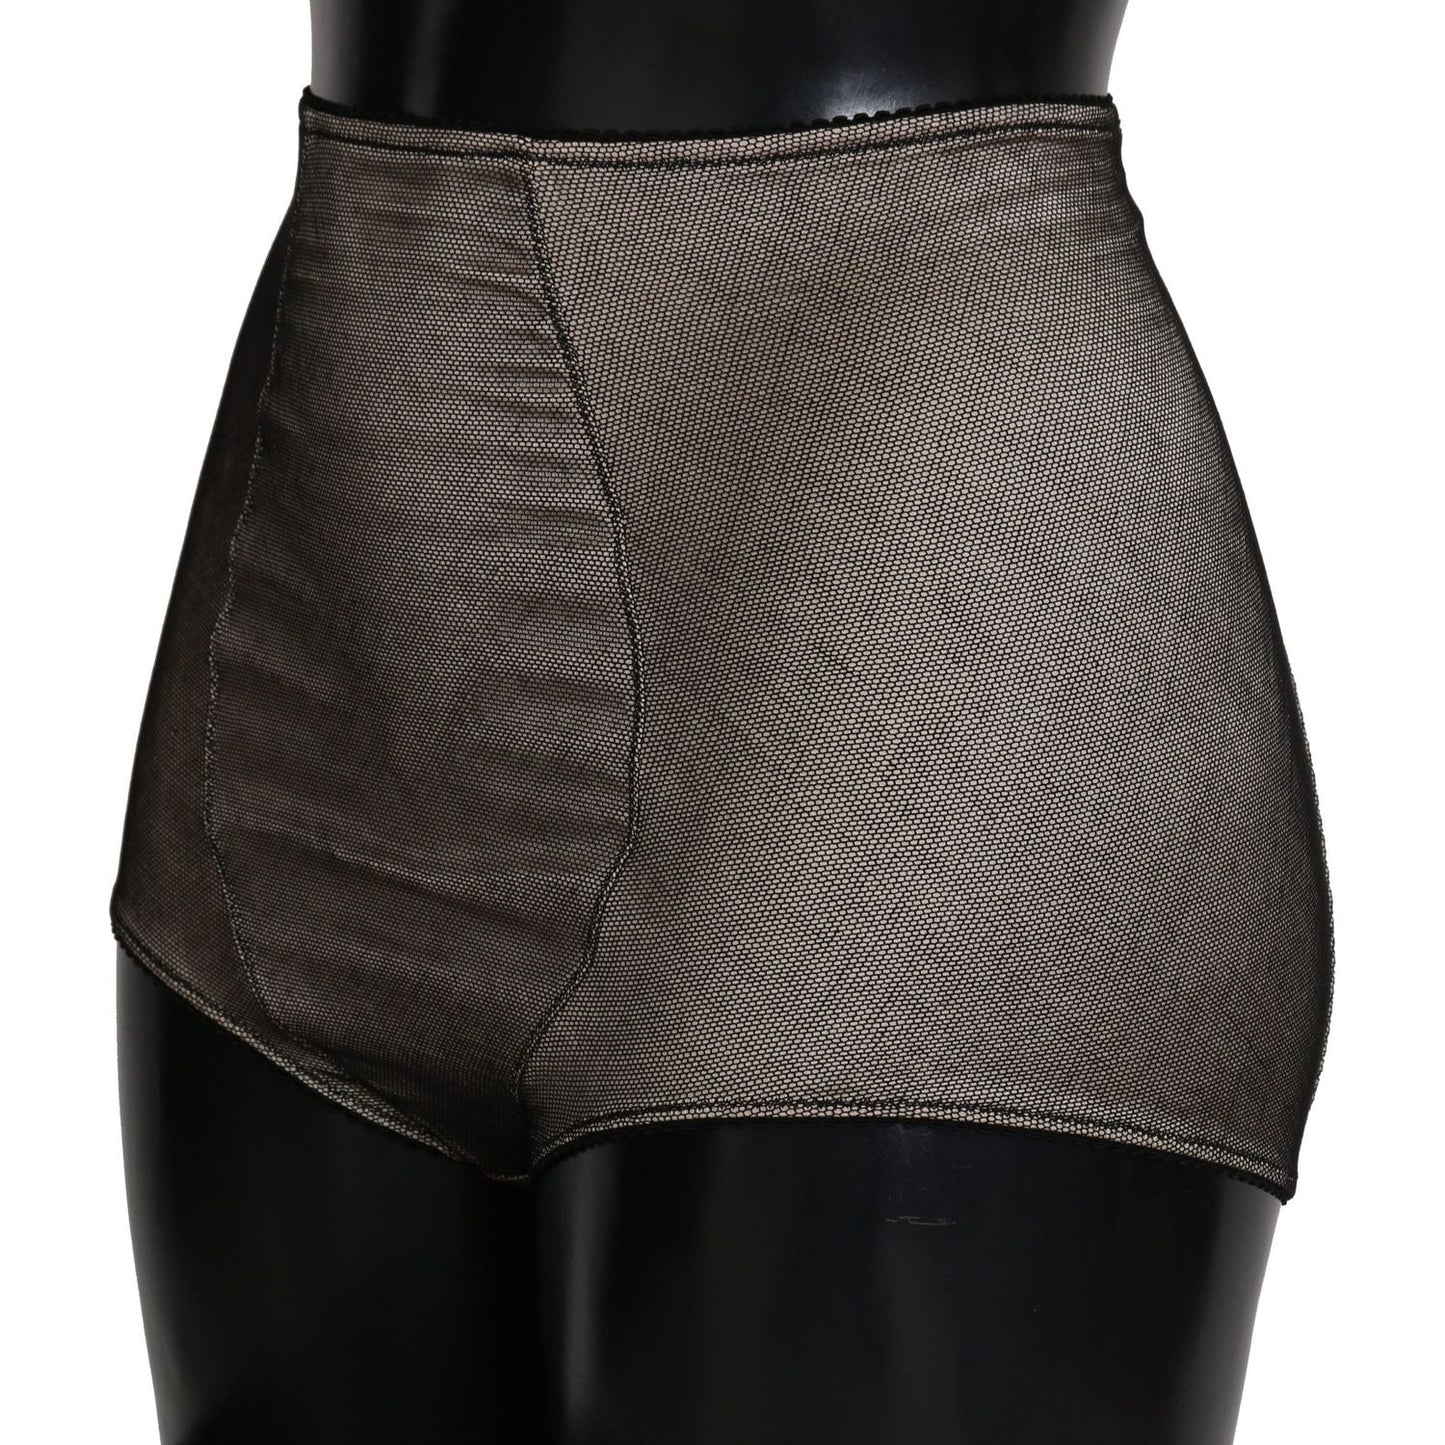 Dolce & Gabbana | Bottoms Underwear Beige With Black Net | McRichard Designer Brands